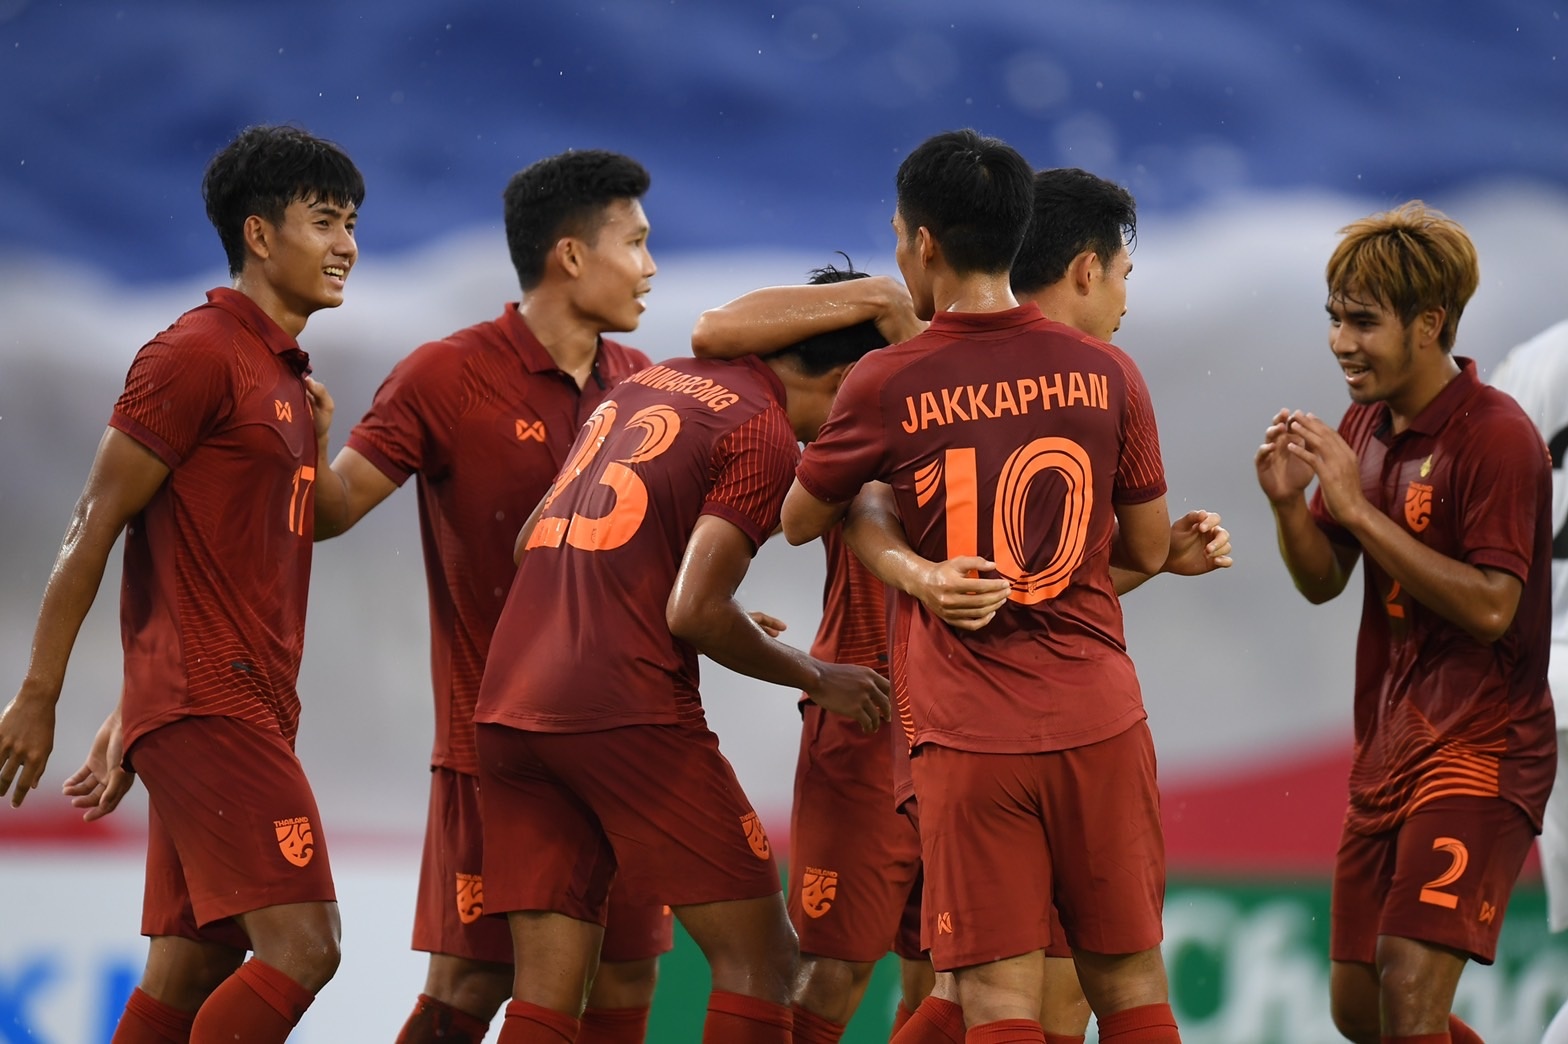 Báo Hàn Quốc gợi ý Thái Lan nên học tập bóng đá Việt Nam - Ảnh 1.